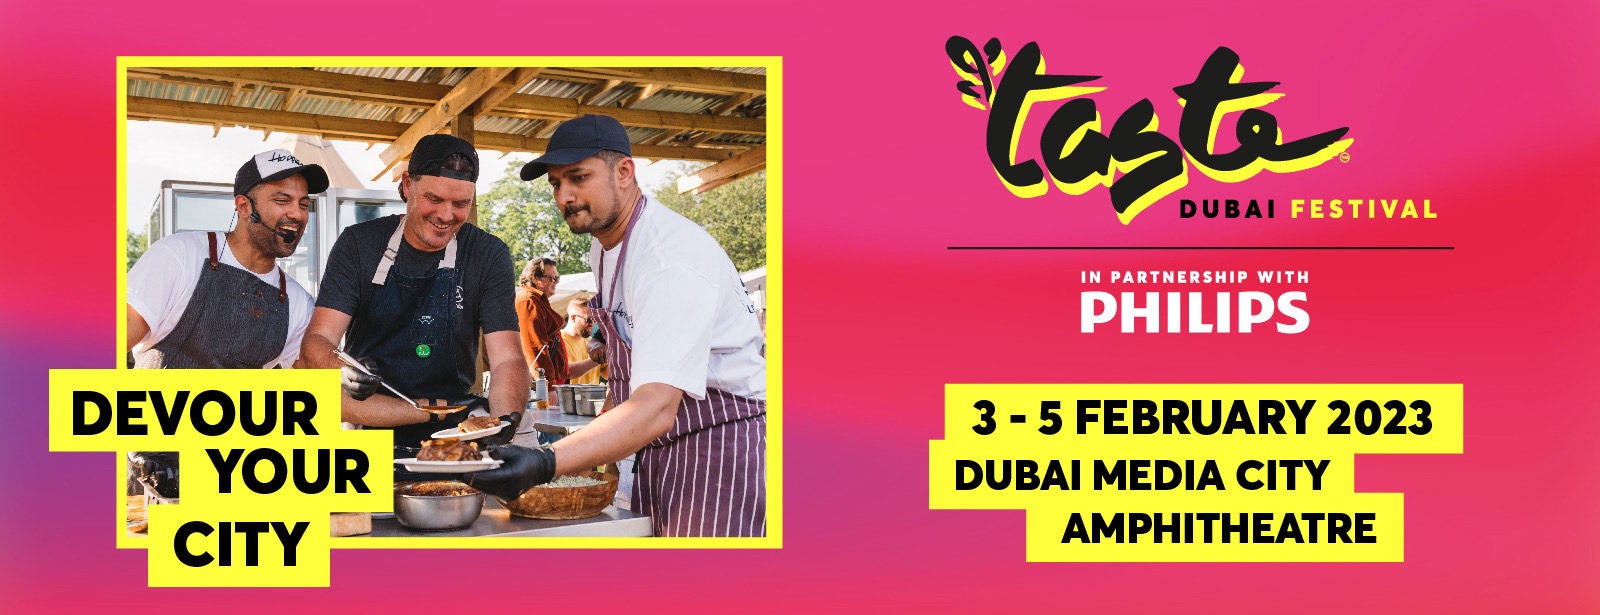 Taste of Dubai 2023 - Coming Soon in UAE